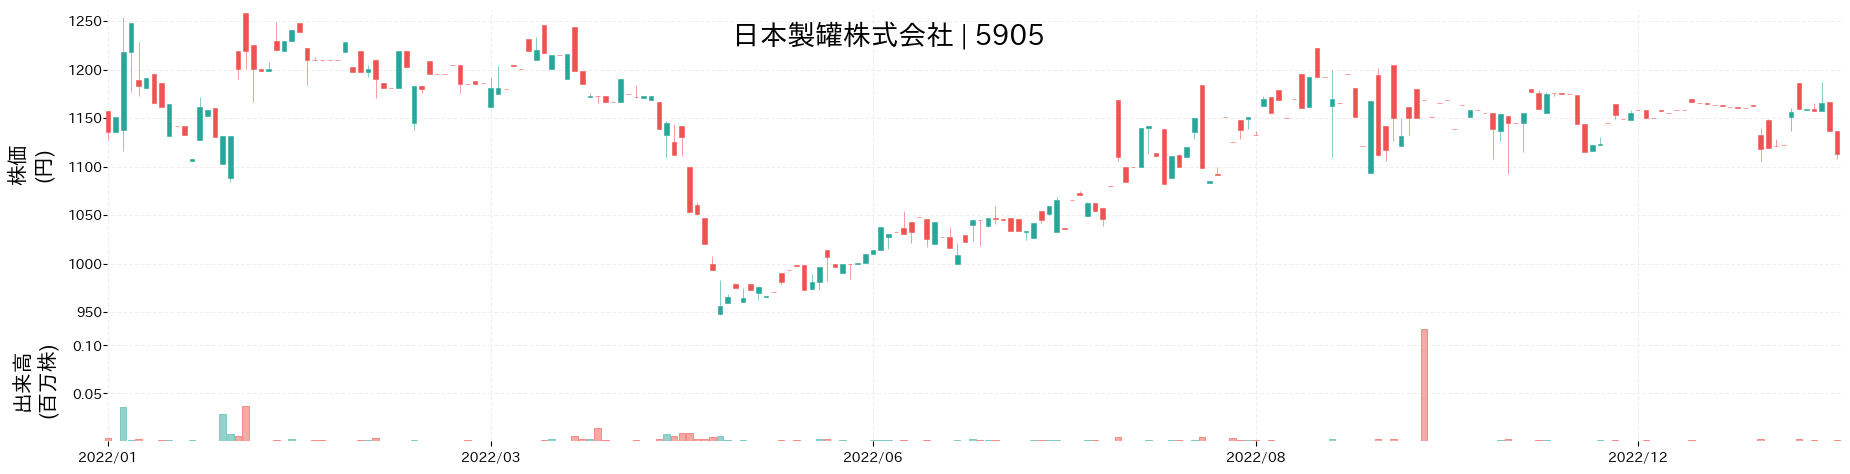 日本製罐の株価推移(2022)